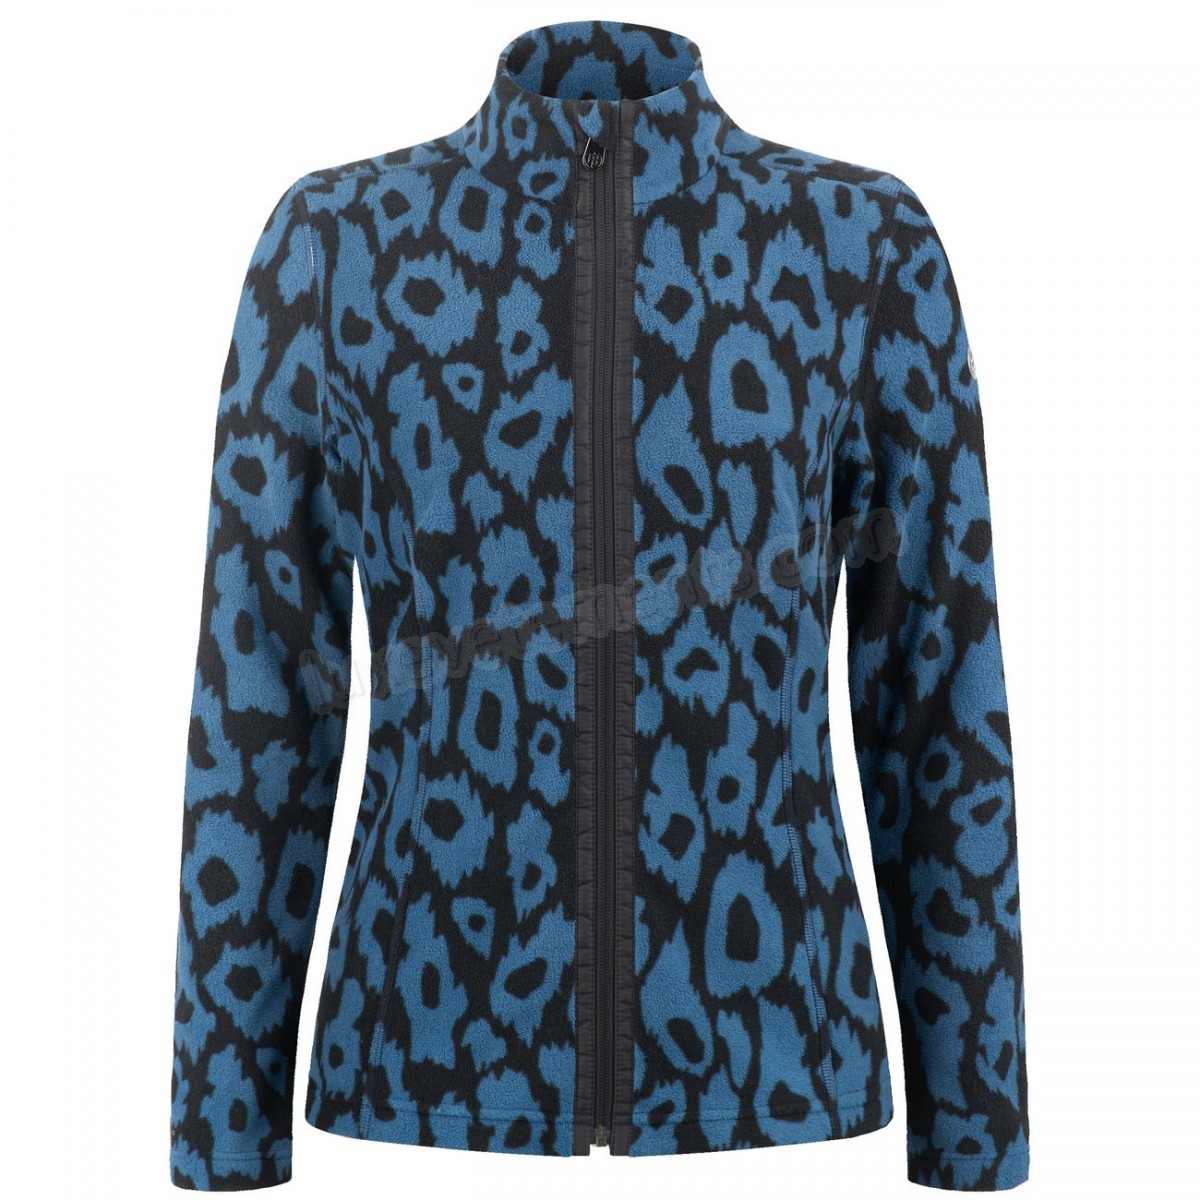 Poivre Blanc-Sports d'hiver femme POIVRE BLANC Veste Polaire Poivre Blanc Fleece Jacket 1500 Panther Blue Femme Vente en ligne - -3